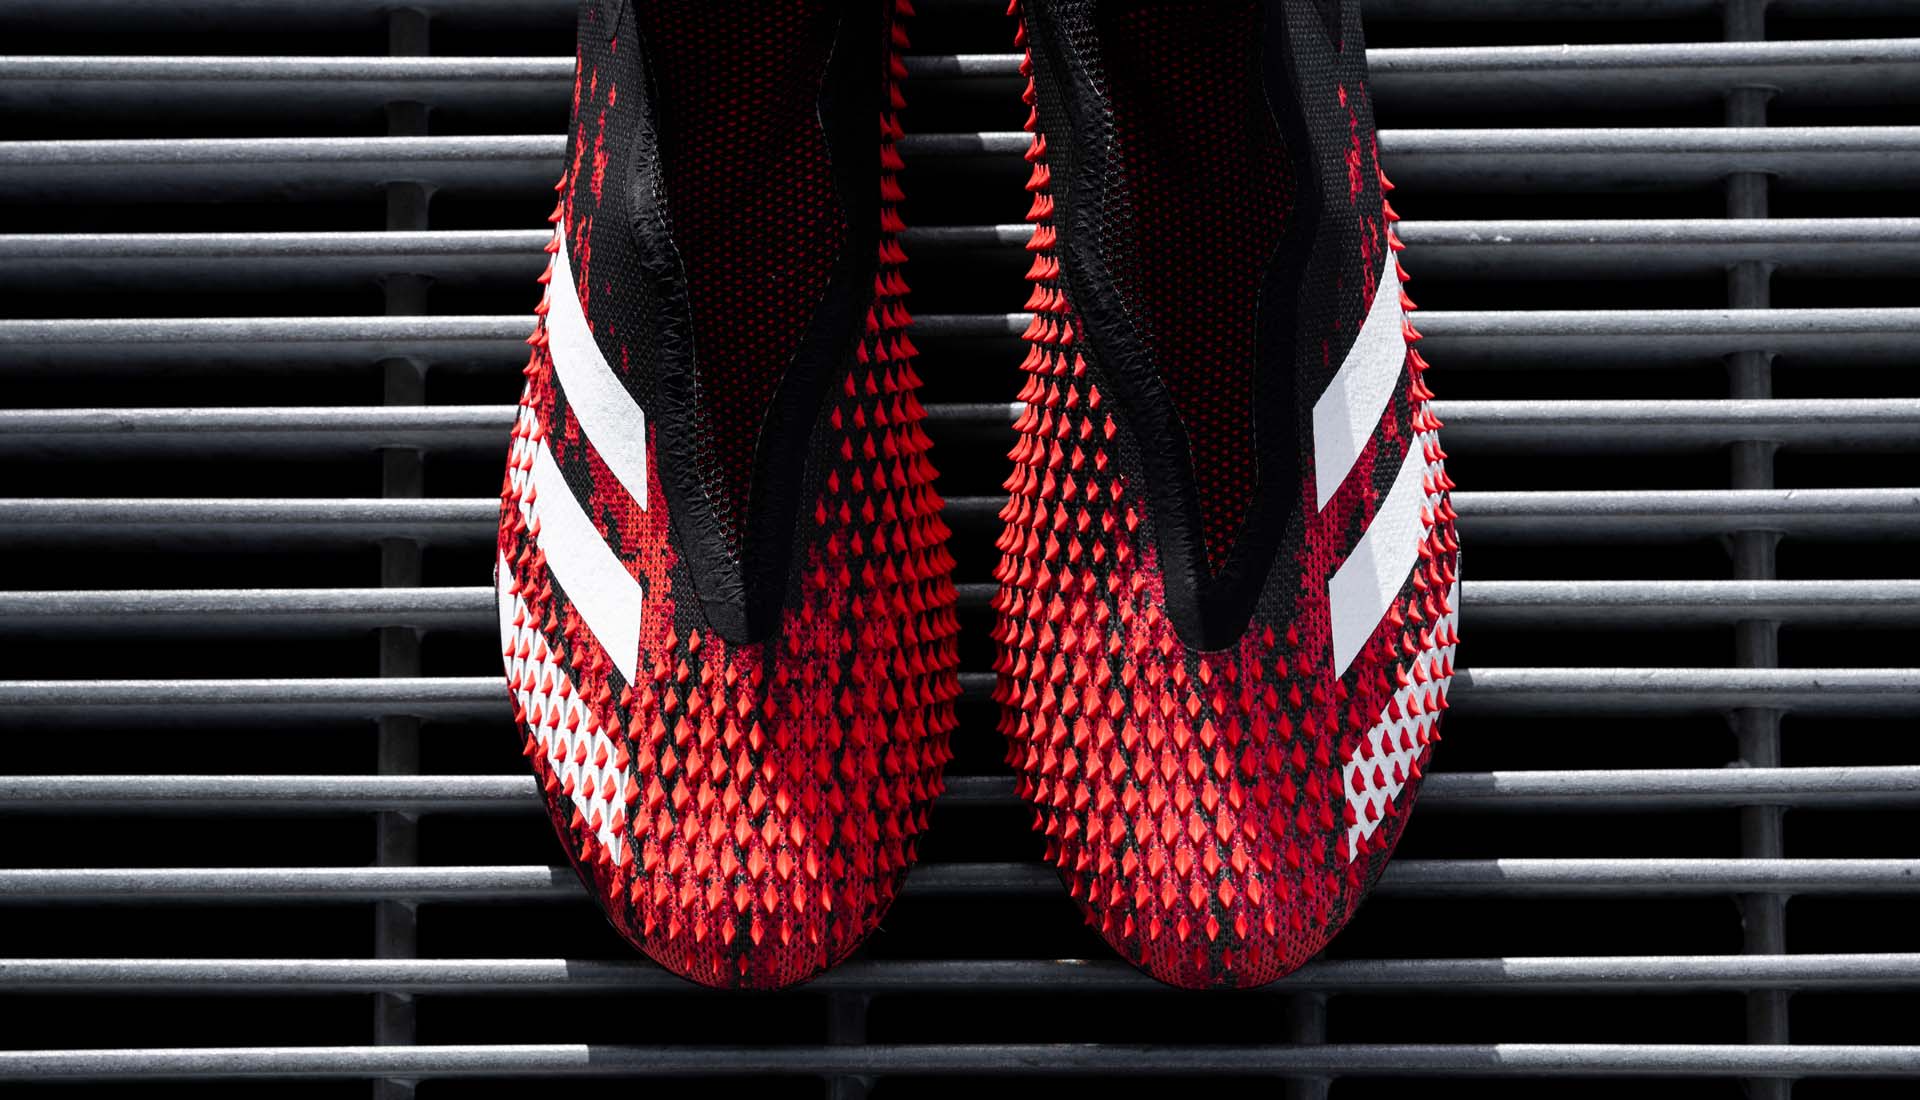 Adidas Predator 20+ với các vân nổi gai góc hỗ trợ kiểm soát bóng trên bề mặt